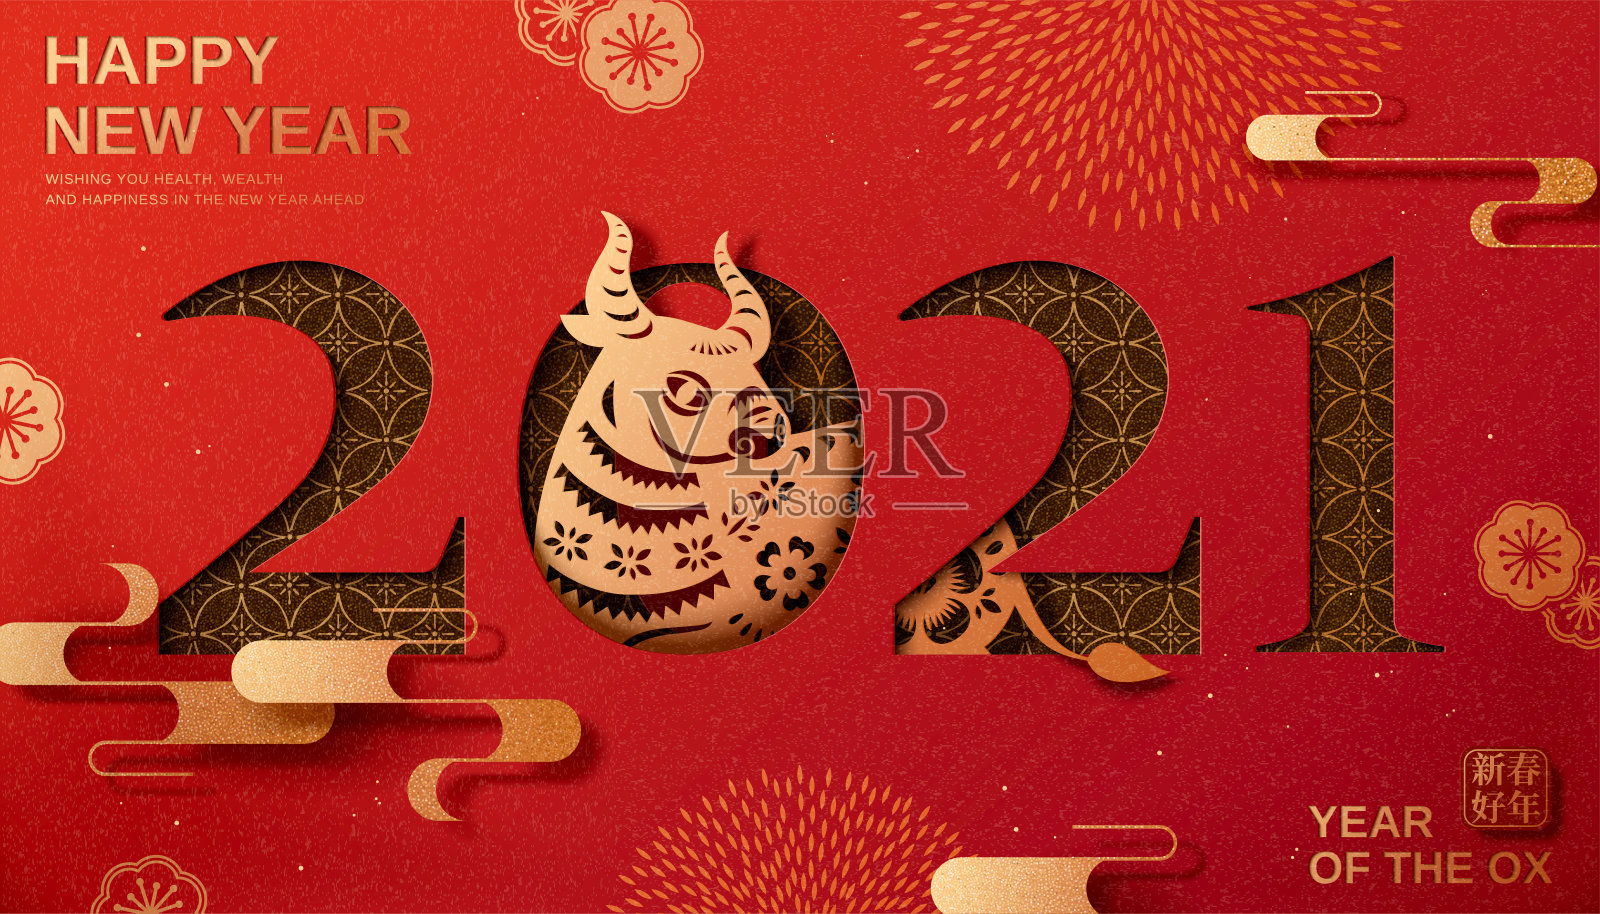 中国新年庆祝卡片设计模板素材